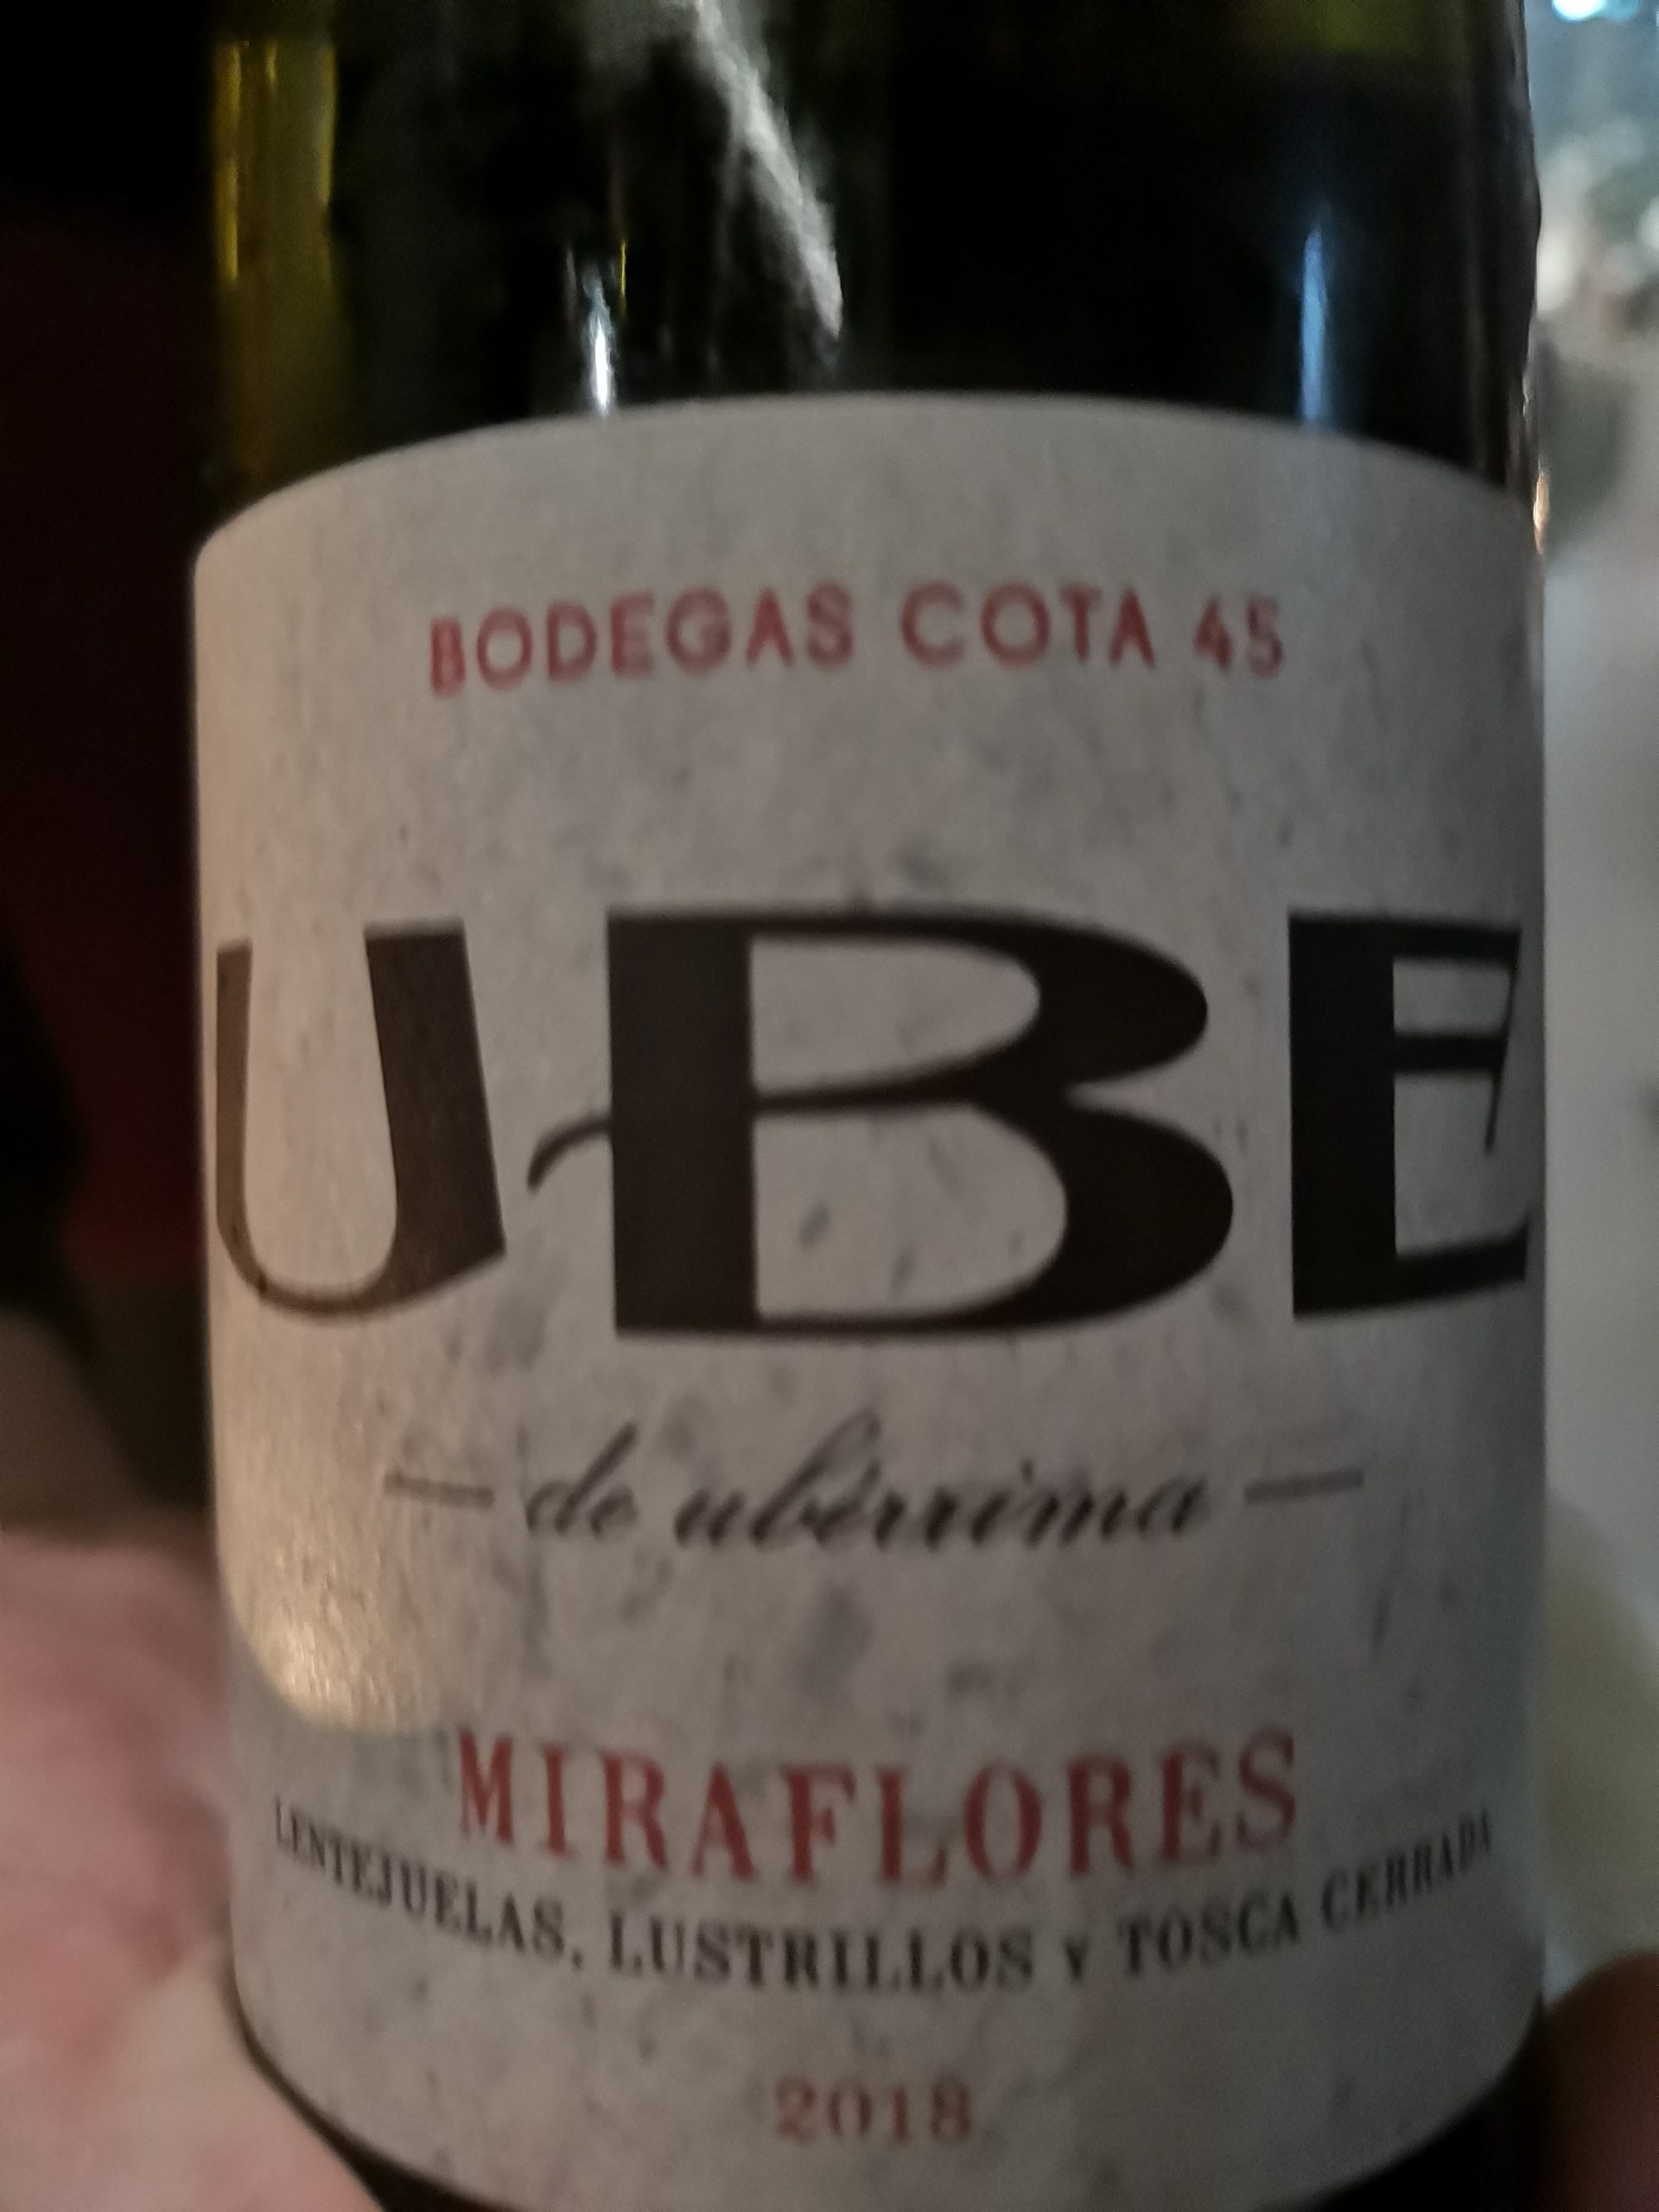 2018 Ube Miraflores | Cota 45